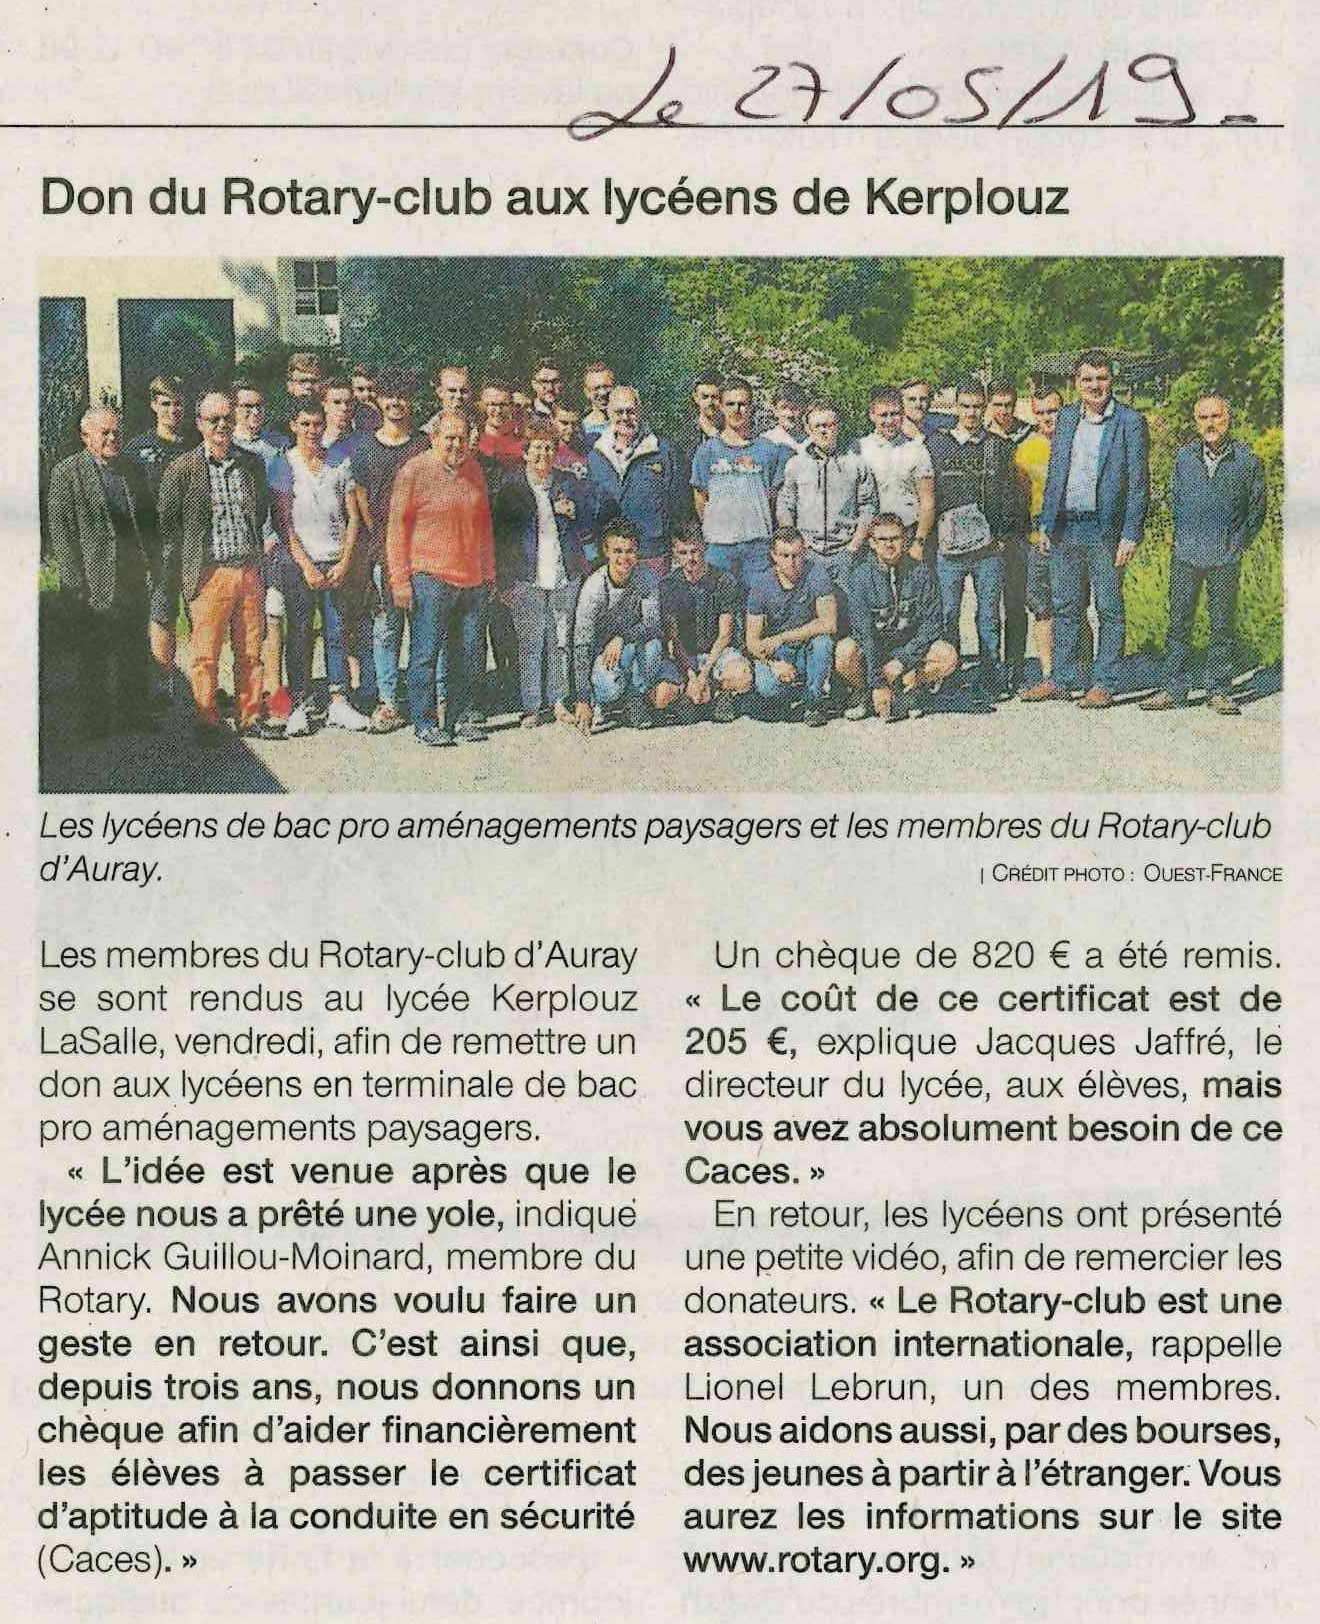 Don du Rotary-Club aux lycéens de Kerplouz